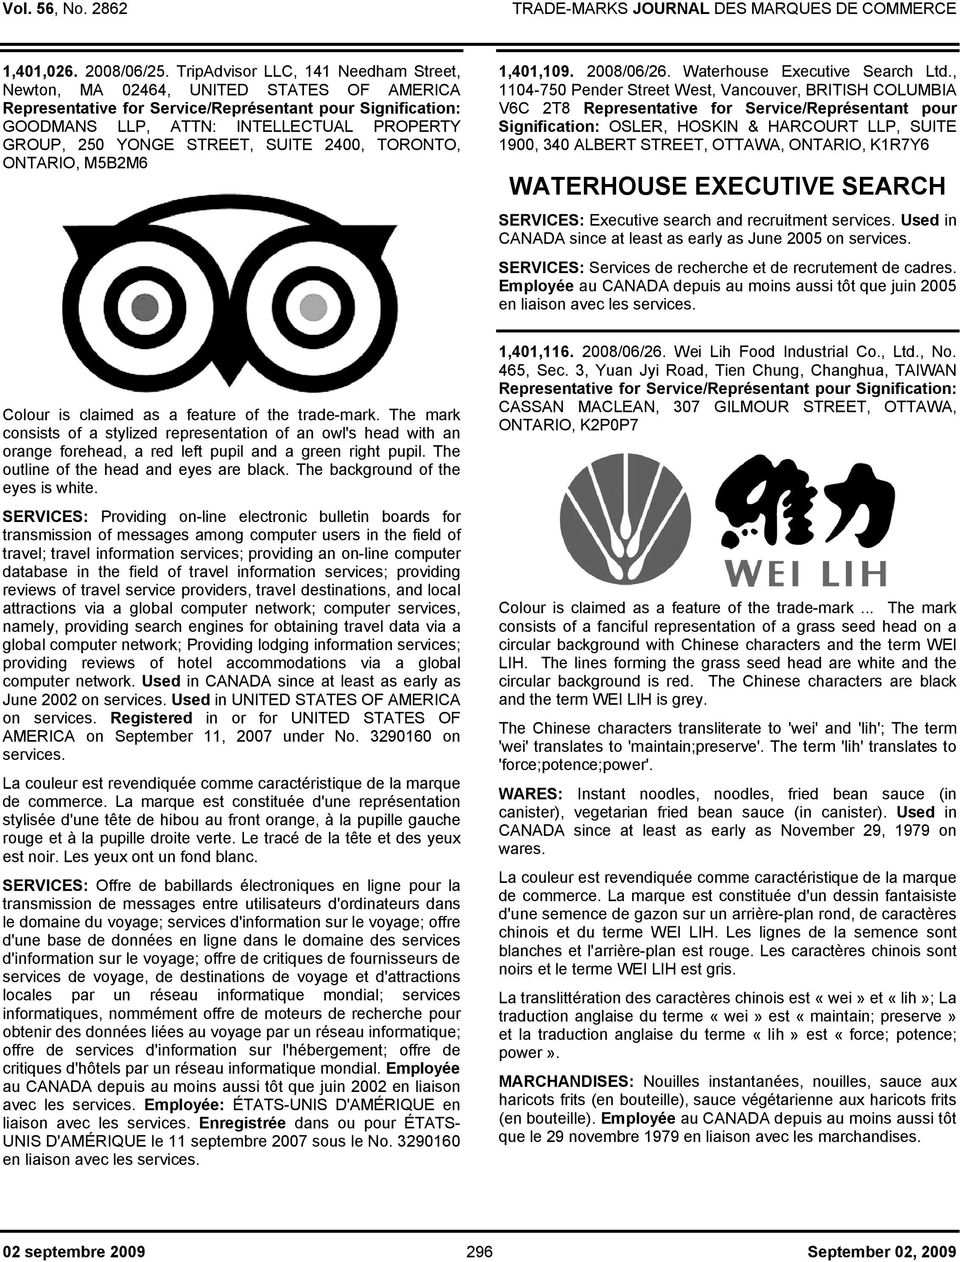 2008/06/26. Waterhouse Executive Search Ltd.